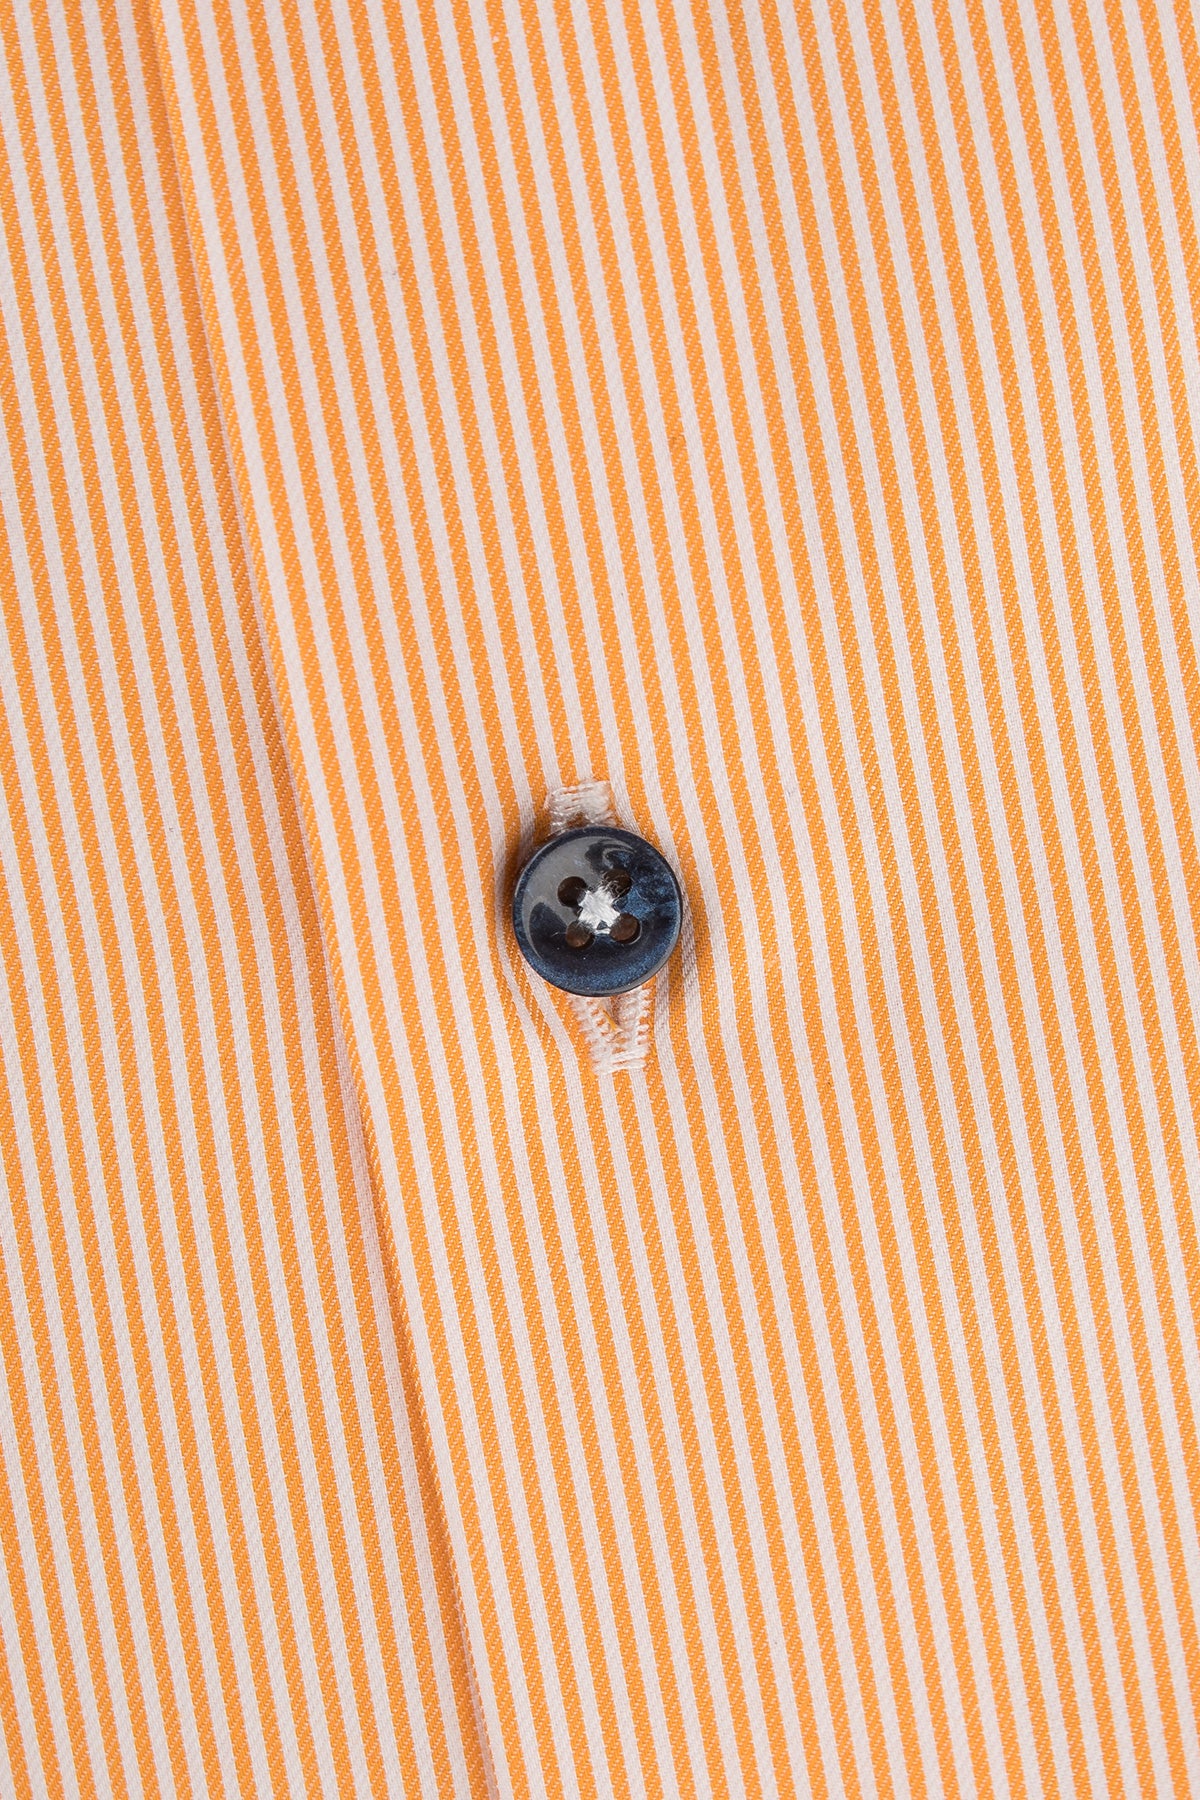 Orange striped regular fit shirt with contrast details